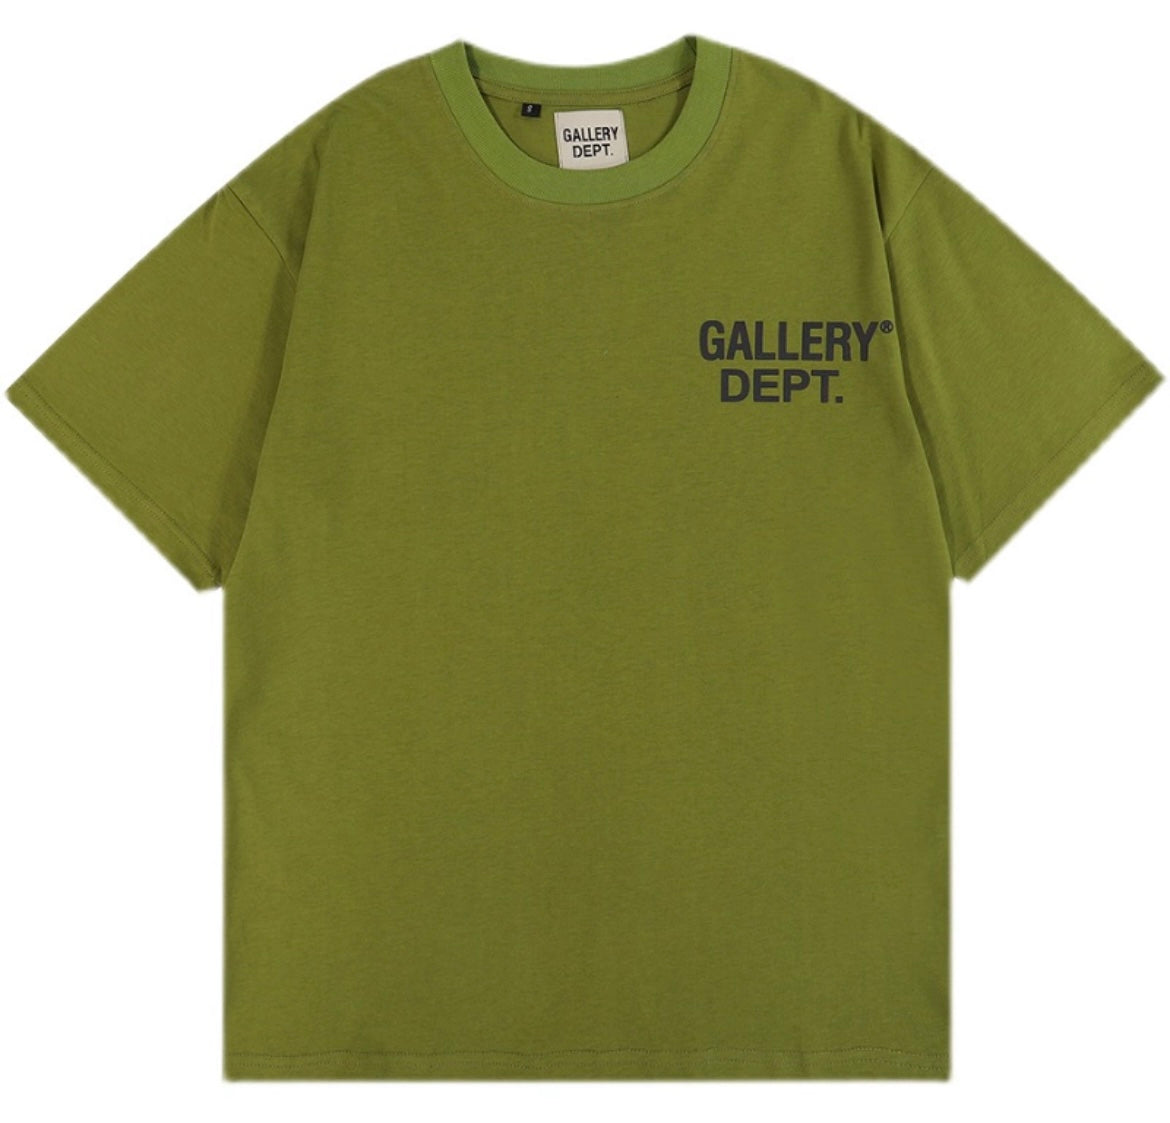 Camiseta Gallery Dept.